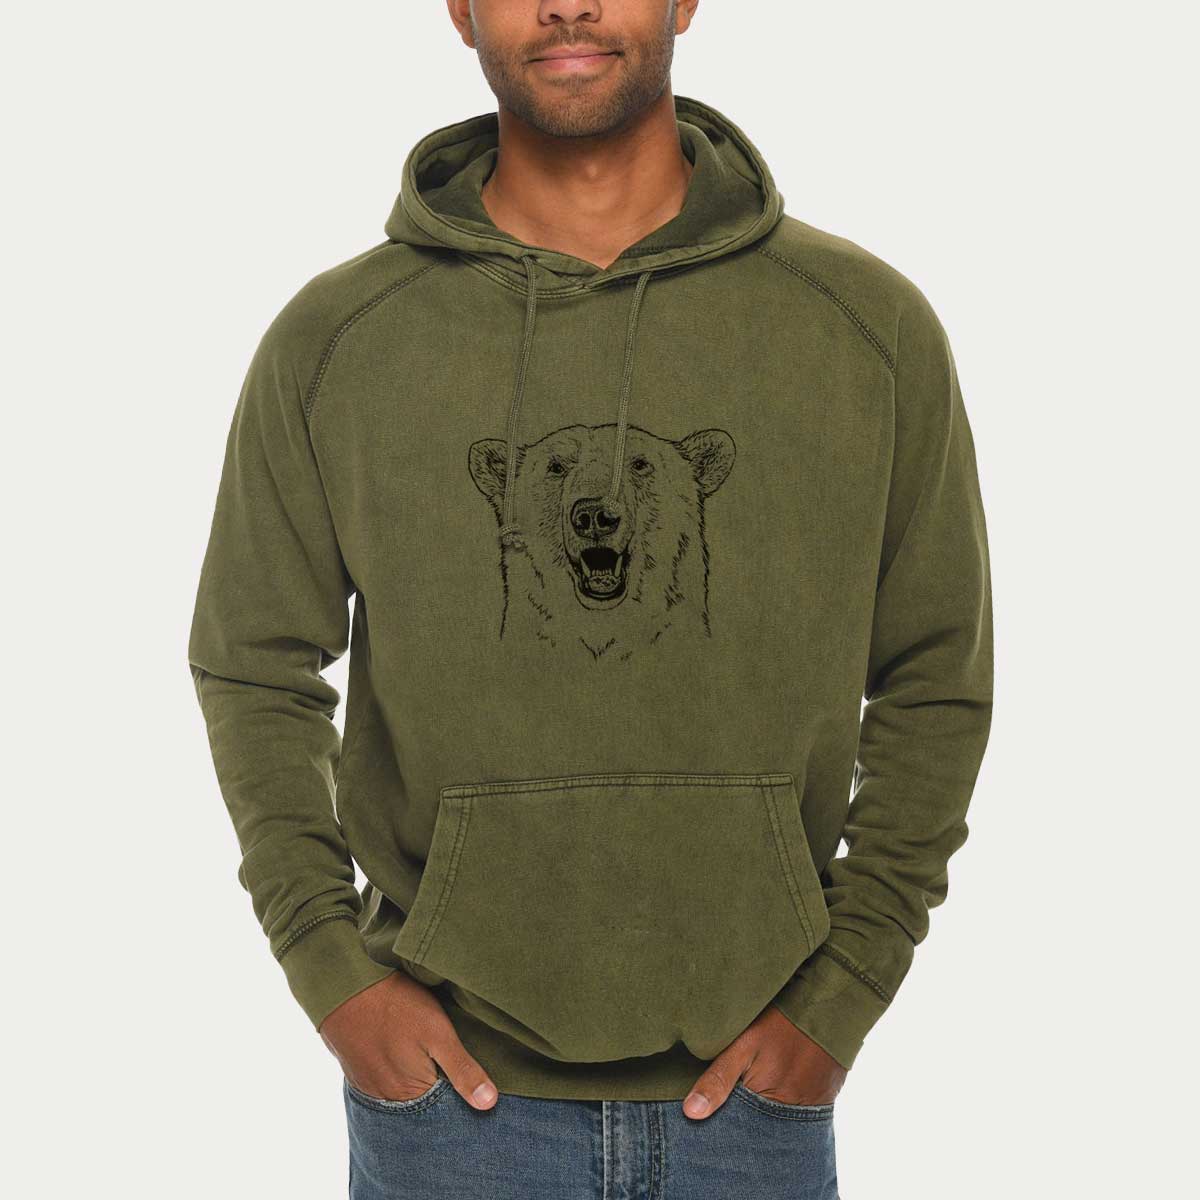 Ursus Maritimus - Polar Bear  - Mid-Weight Unisex Vintage 100% Cotton Hoodie